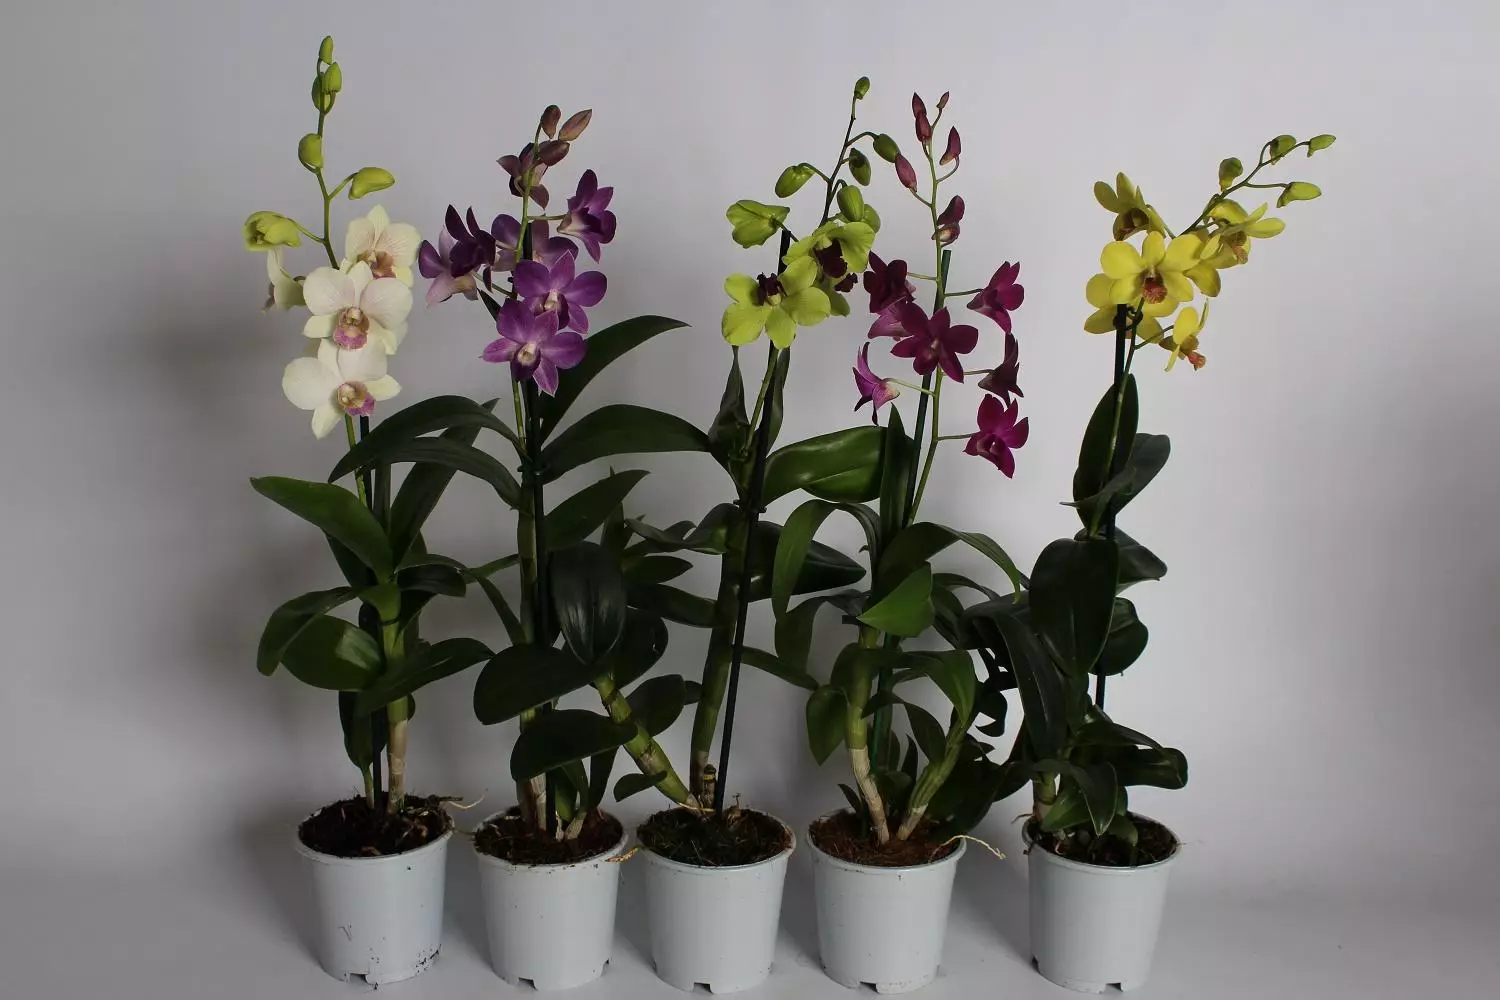 [მცენარეები სახლში] Dendrobium Orchids სახლში: პოპულარული ხედები და ზრუნვა